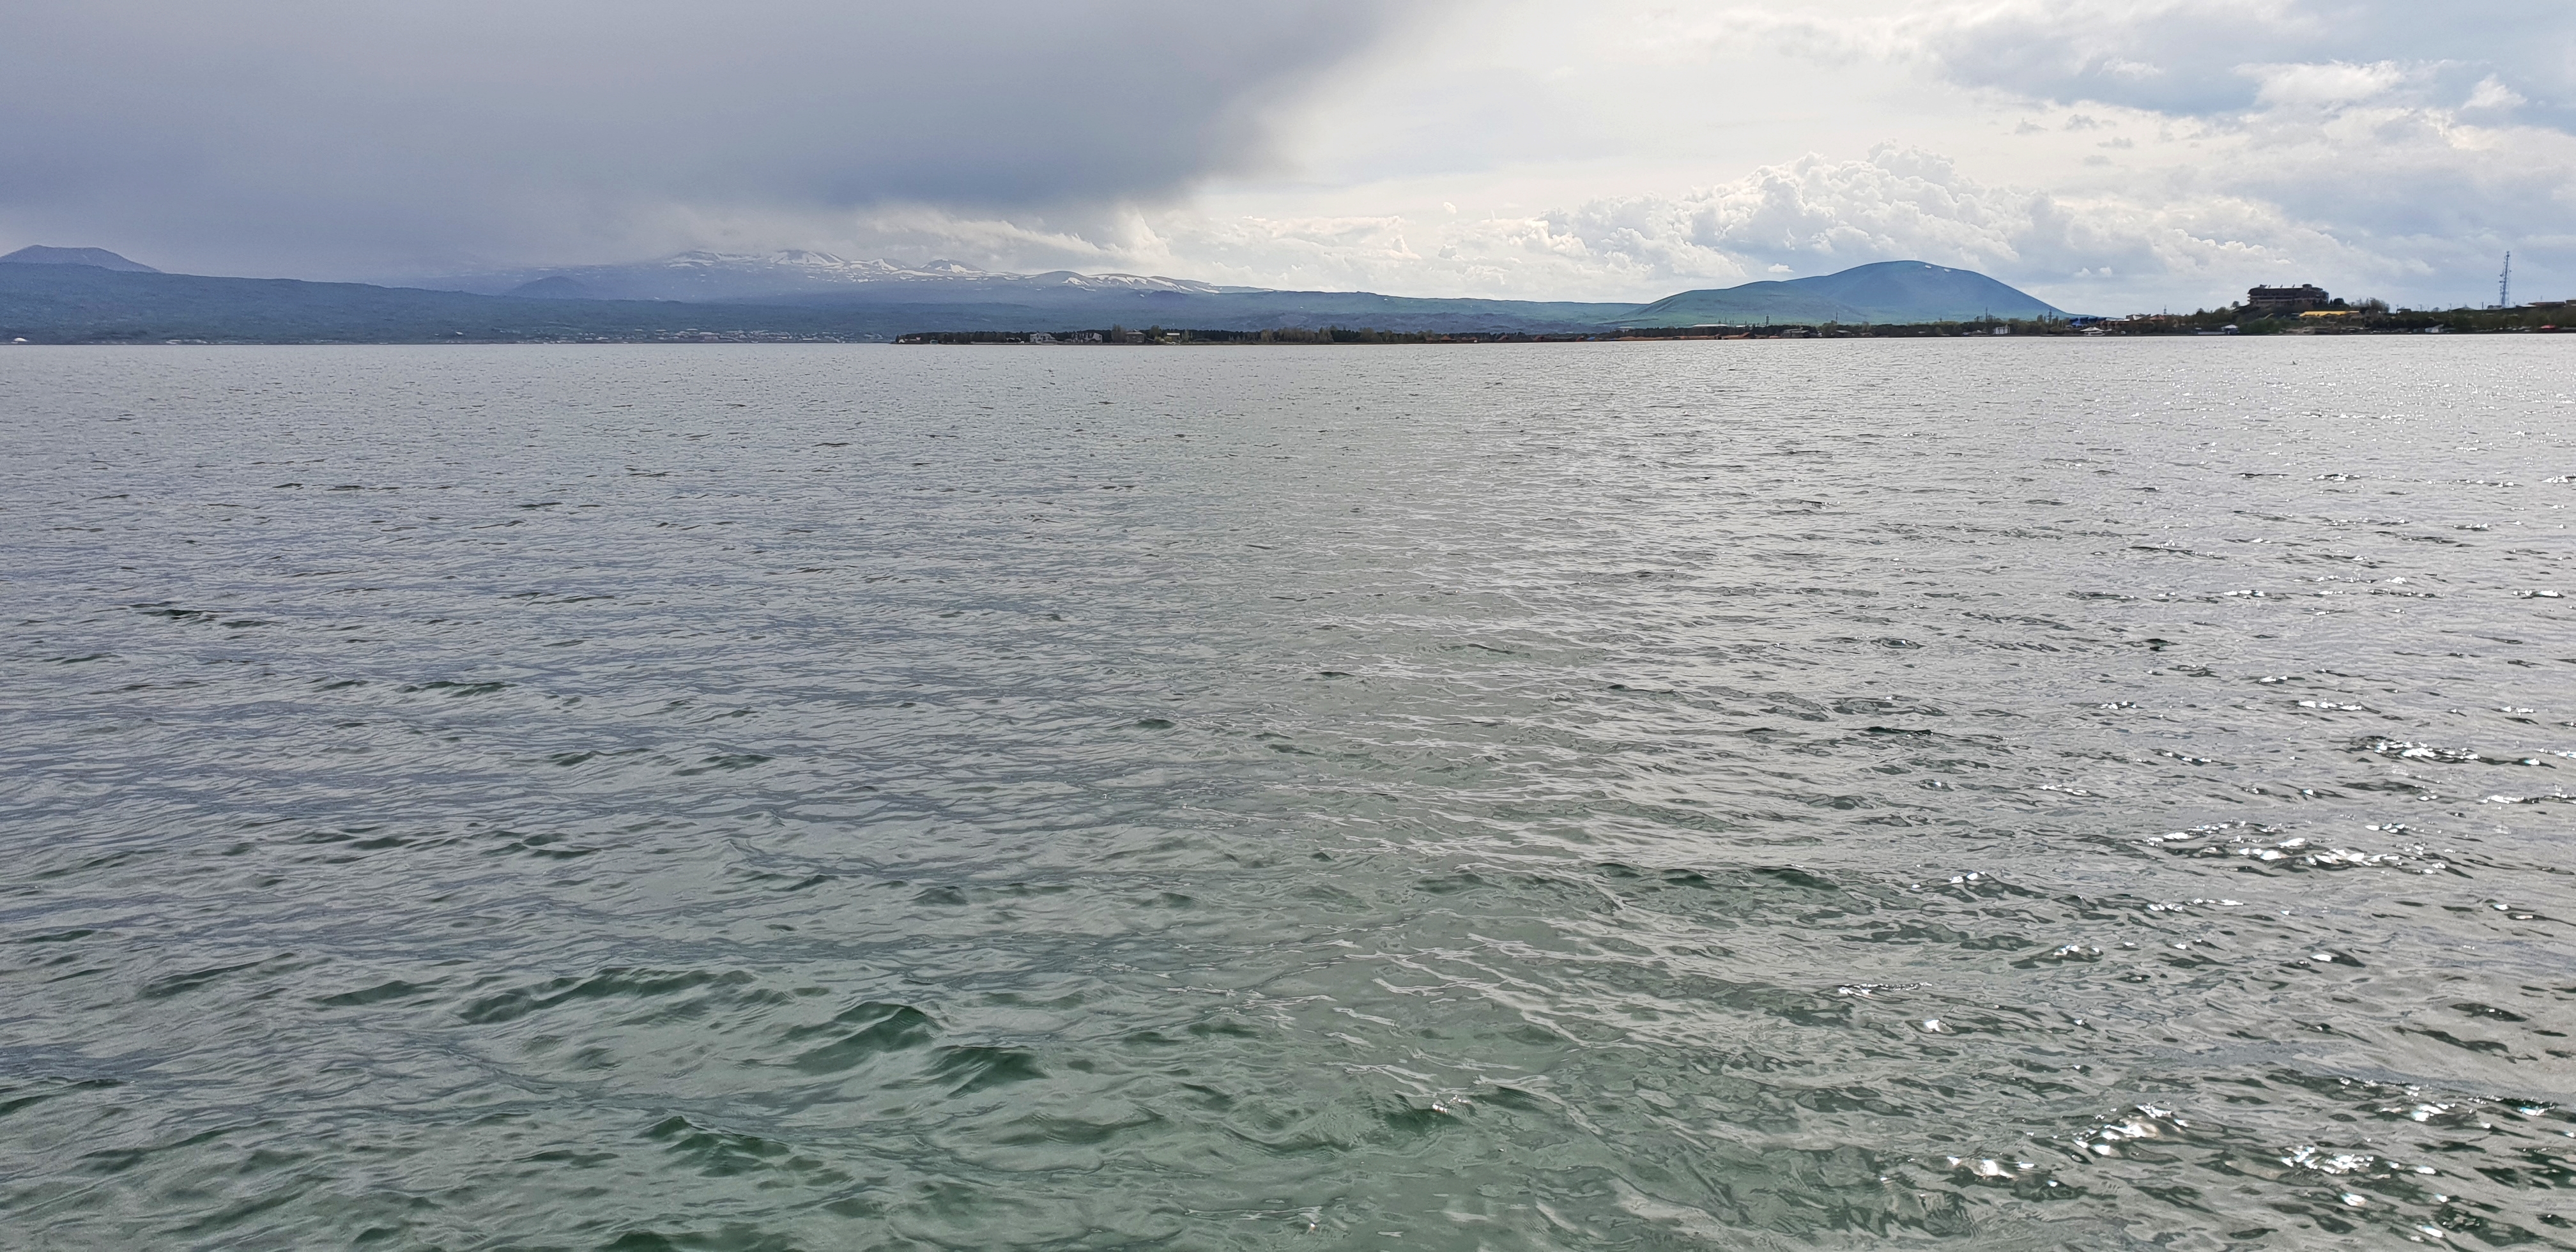 Lake Sevan is the largest freshwater alpine lake in Eurasia